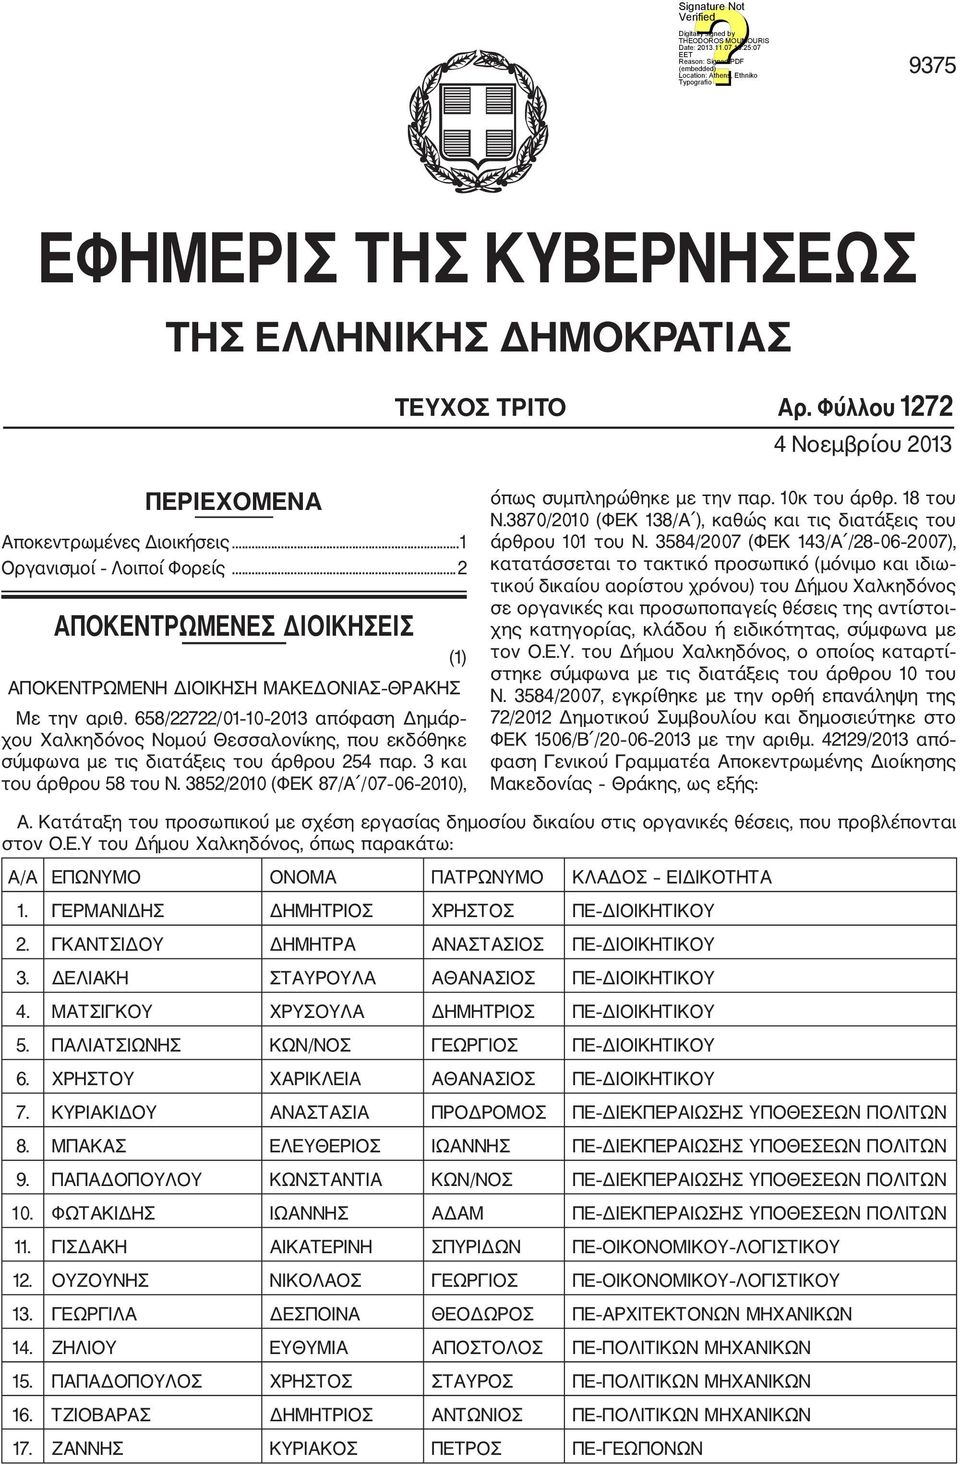 658/22722/01 10 2013 απόφαση Δημάρ χου Χαλκηδόνος Νομού Θεσσαλονίκης, που εκδόθηκε σύμφωνα με τις διατάξεις του άρθρου 254 παρ. 3 και του άρθρου 58 του Ν.